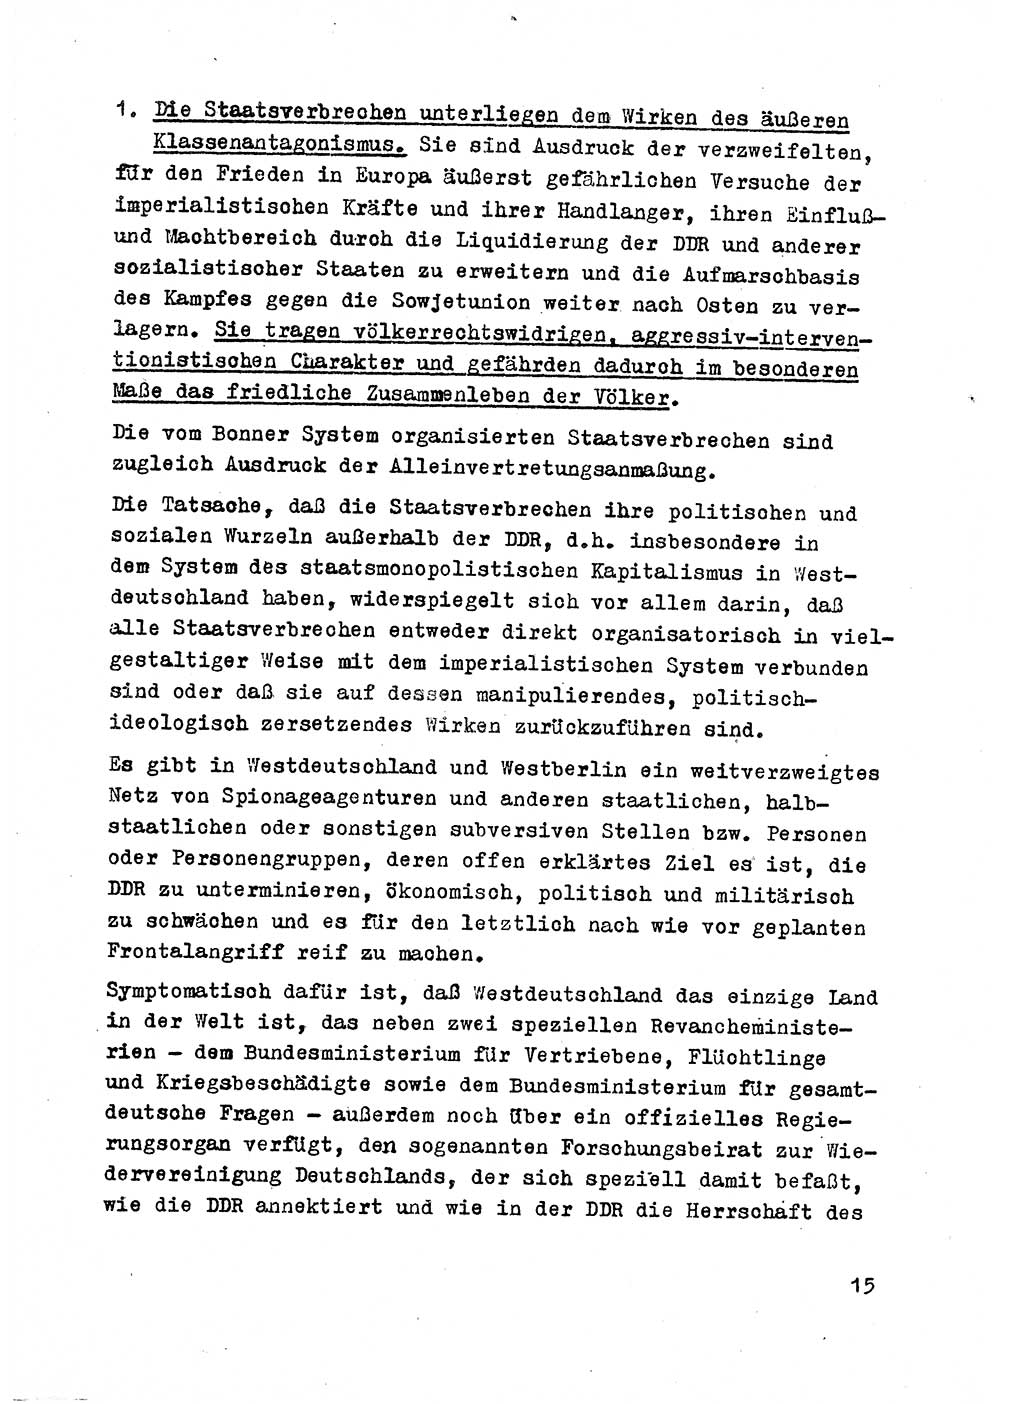 Strafrecht der DDR (Deutsche Demokratische Republik), Besonderer Teil, Lehrmaterial, Heft 2 1969, Seite 15 (Strafr. DDR BT Lehrmat. H. 2 1969, S. 15)